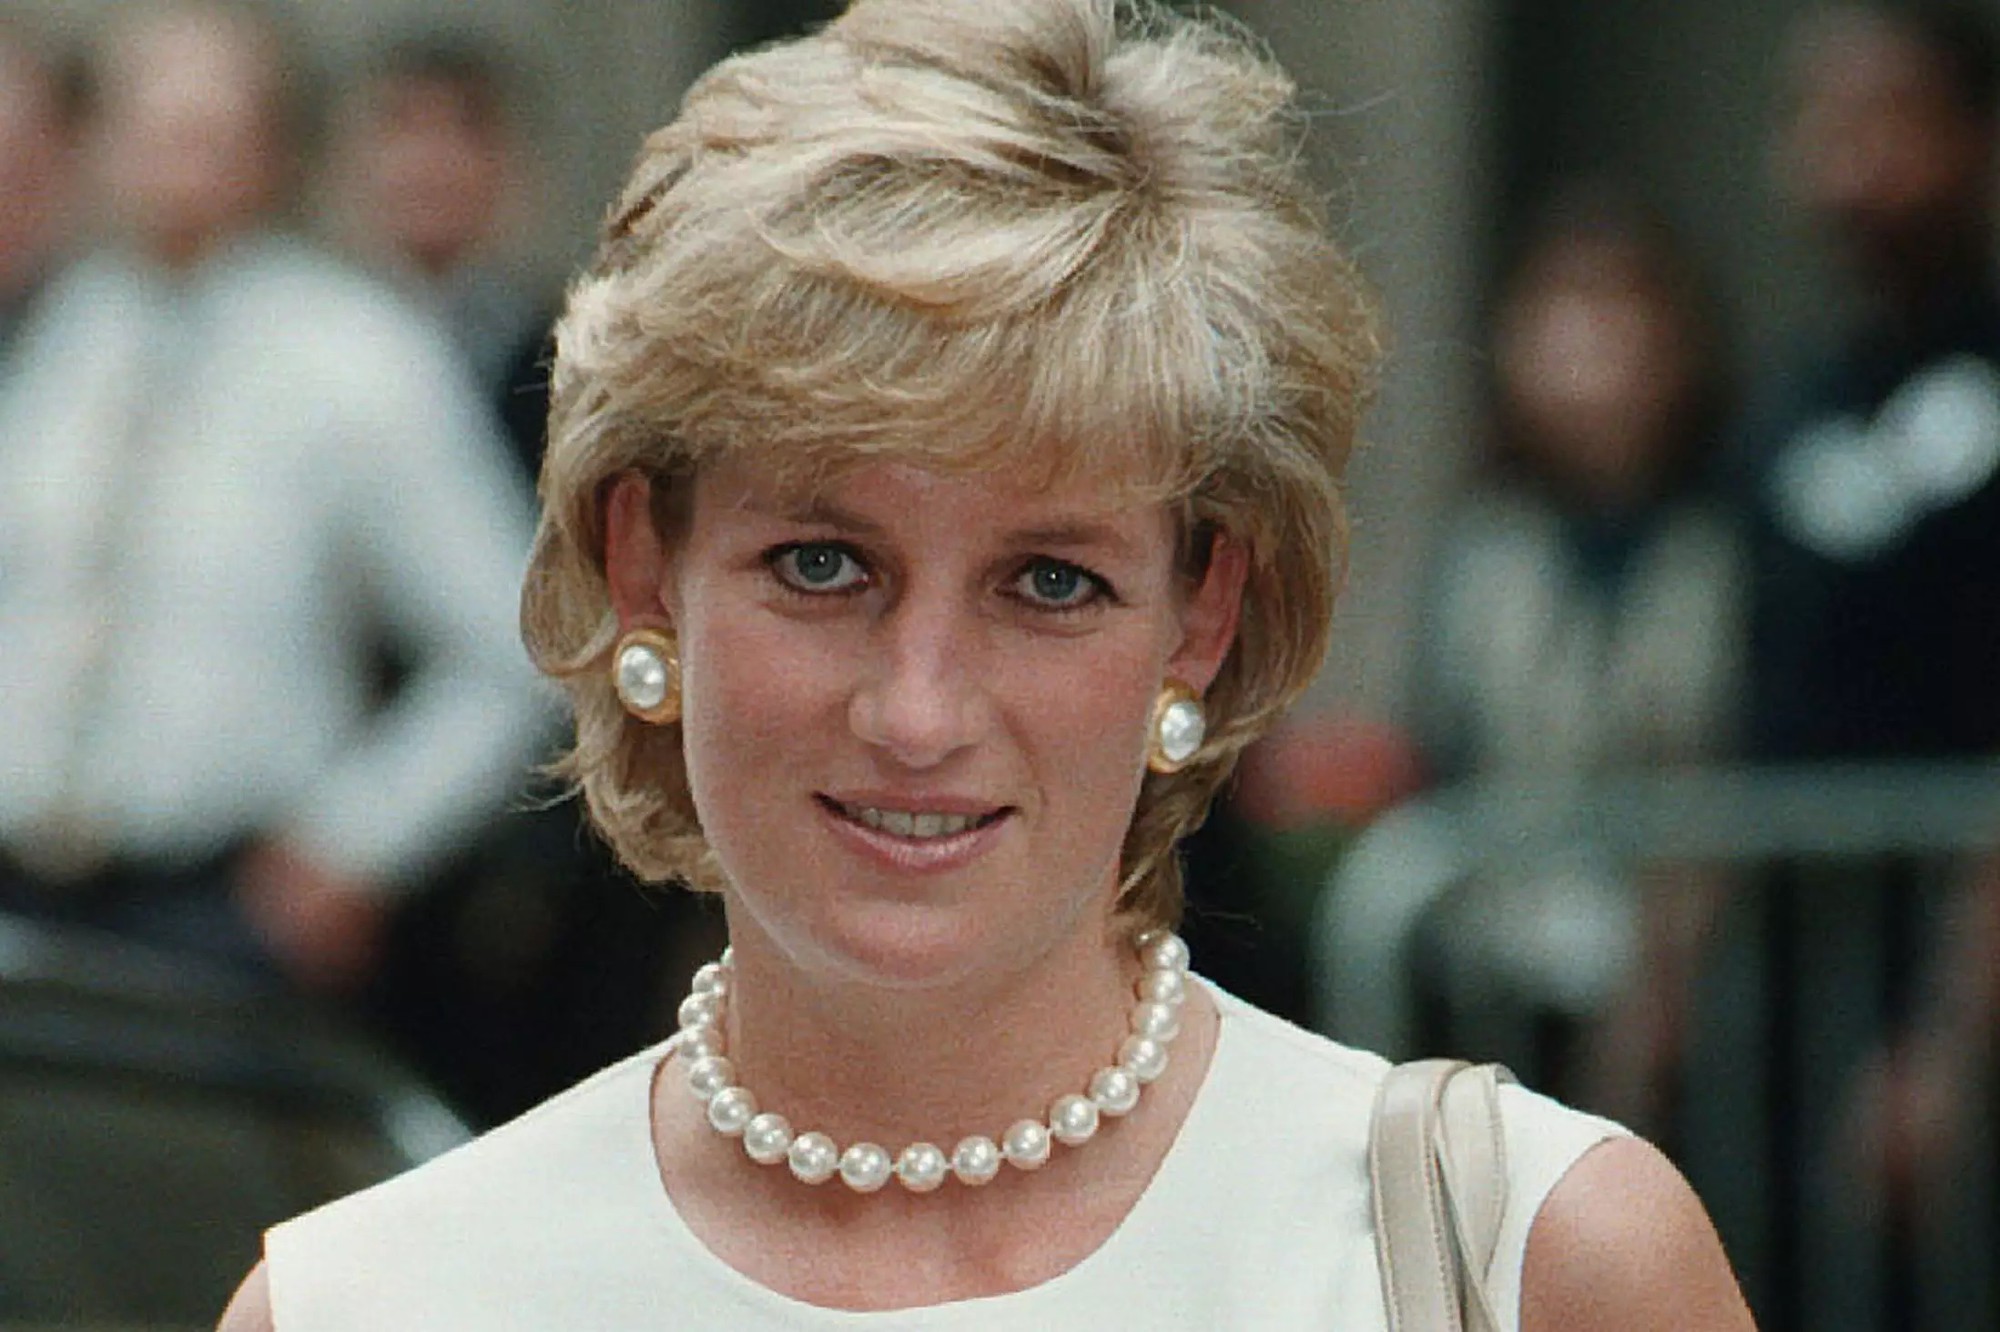 Bí mật đằng sau mái tóc ngắn hoàn hảo của Công nương Diana sẽ khiến bạn càng ngưỡng mộ sự kín đáo của bà - Ảnh 6.